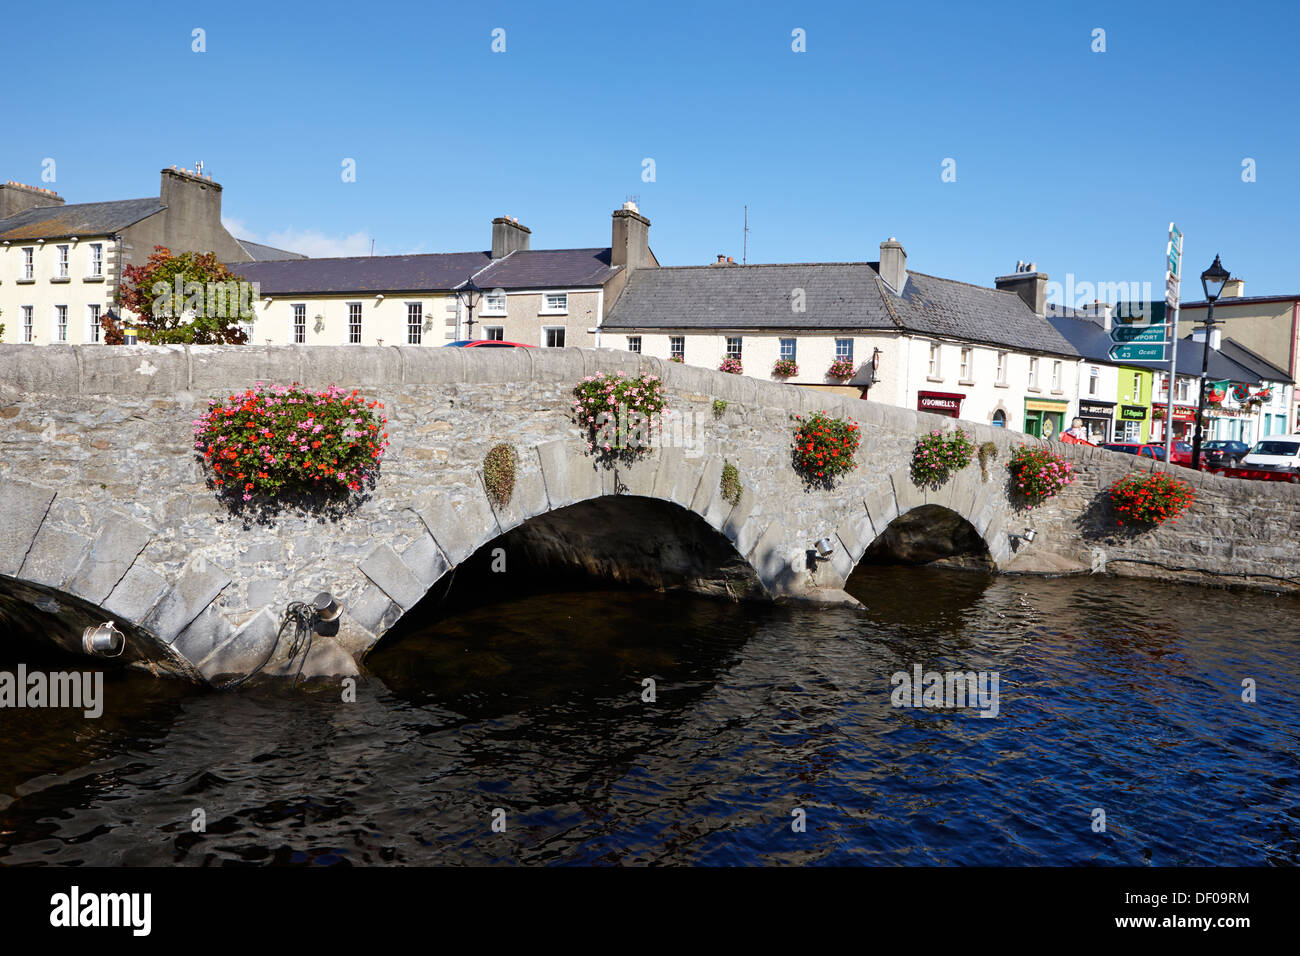 Pont de pierre sur la Castlebar Road sur la rivière carrowbeg south mall westport County Mayo république d'Irlande Banque D'Images